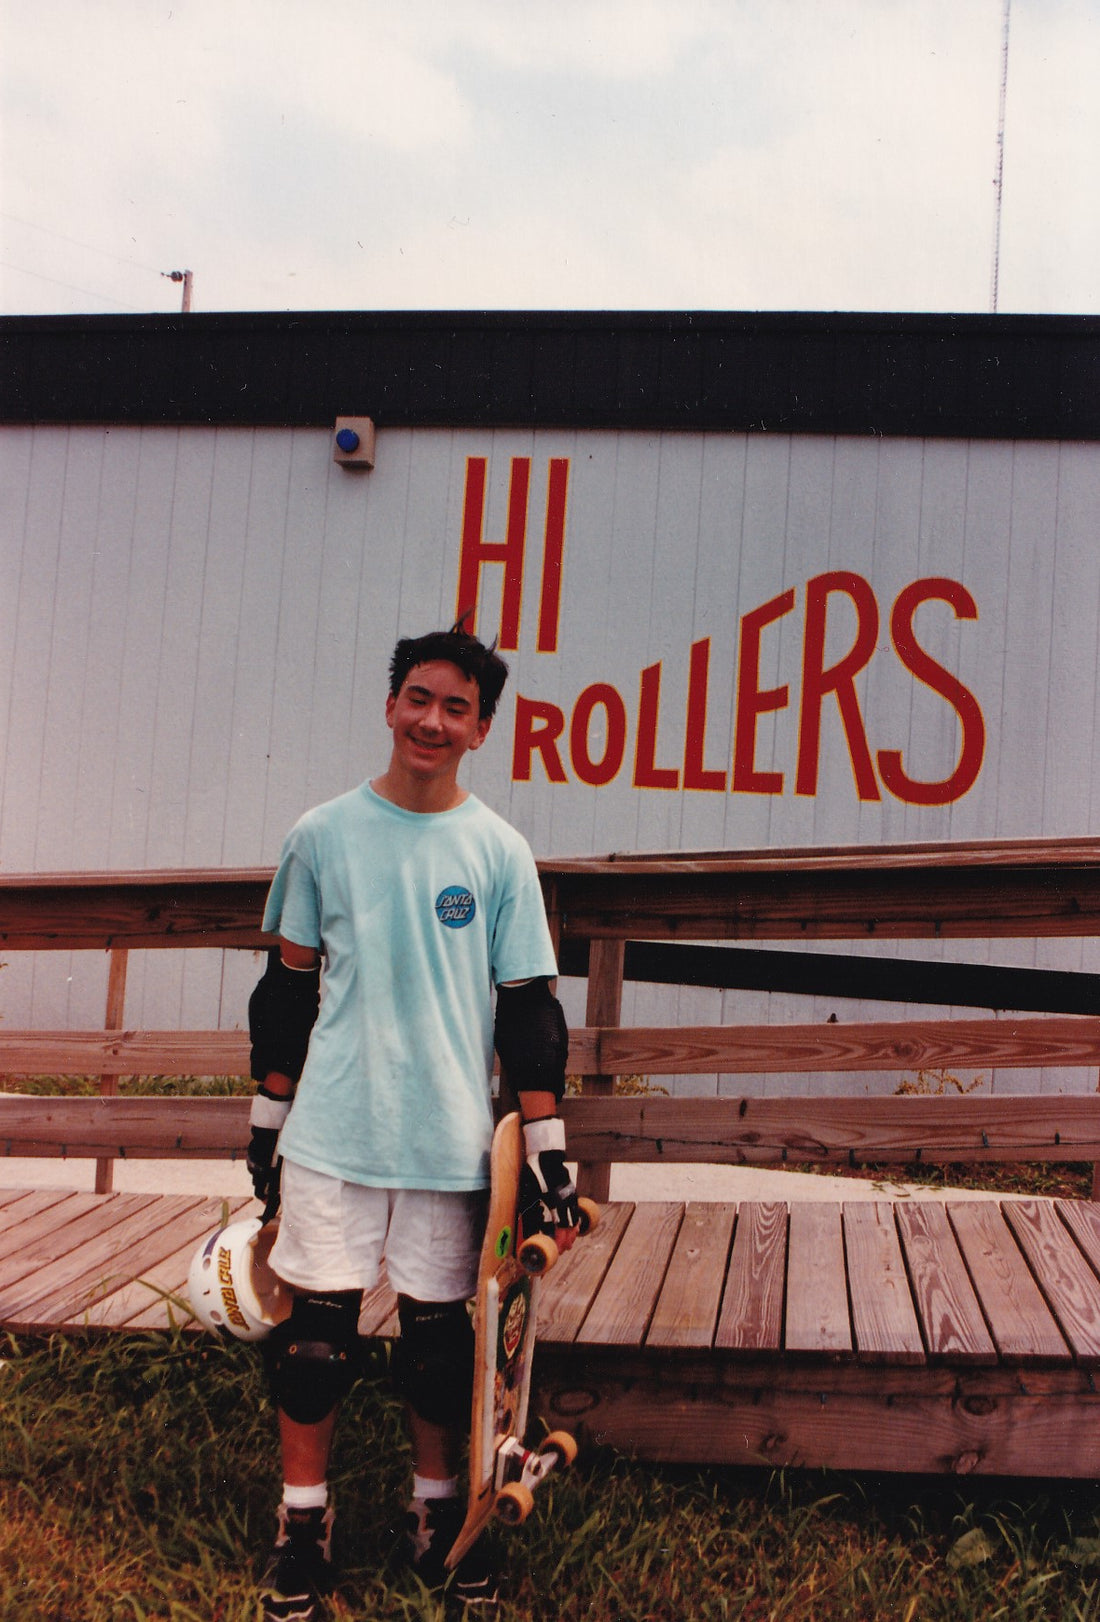 1991 - Skatepark Tour - HI ROLLERS Skatepark, Nashville TN